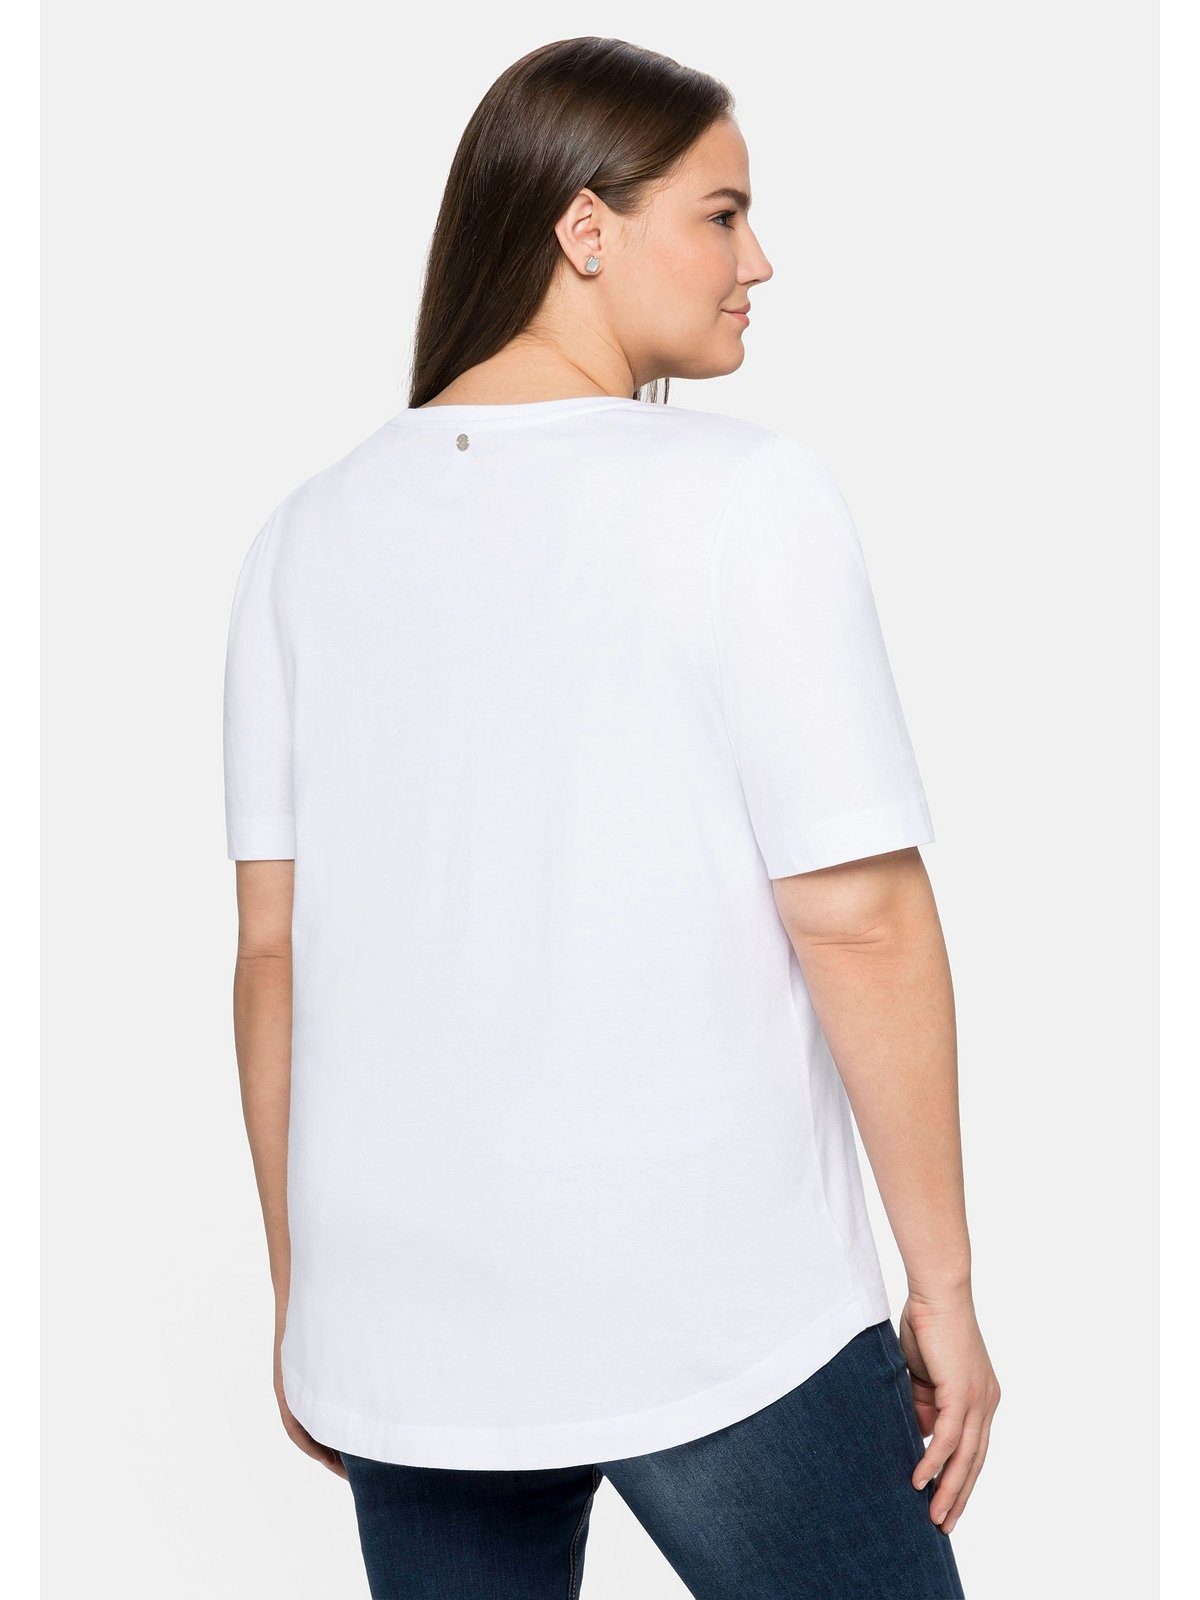 Große T-Shirt Frontdruck Größen Sheego weiß Baumwolle aus mit